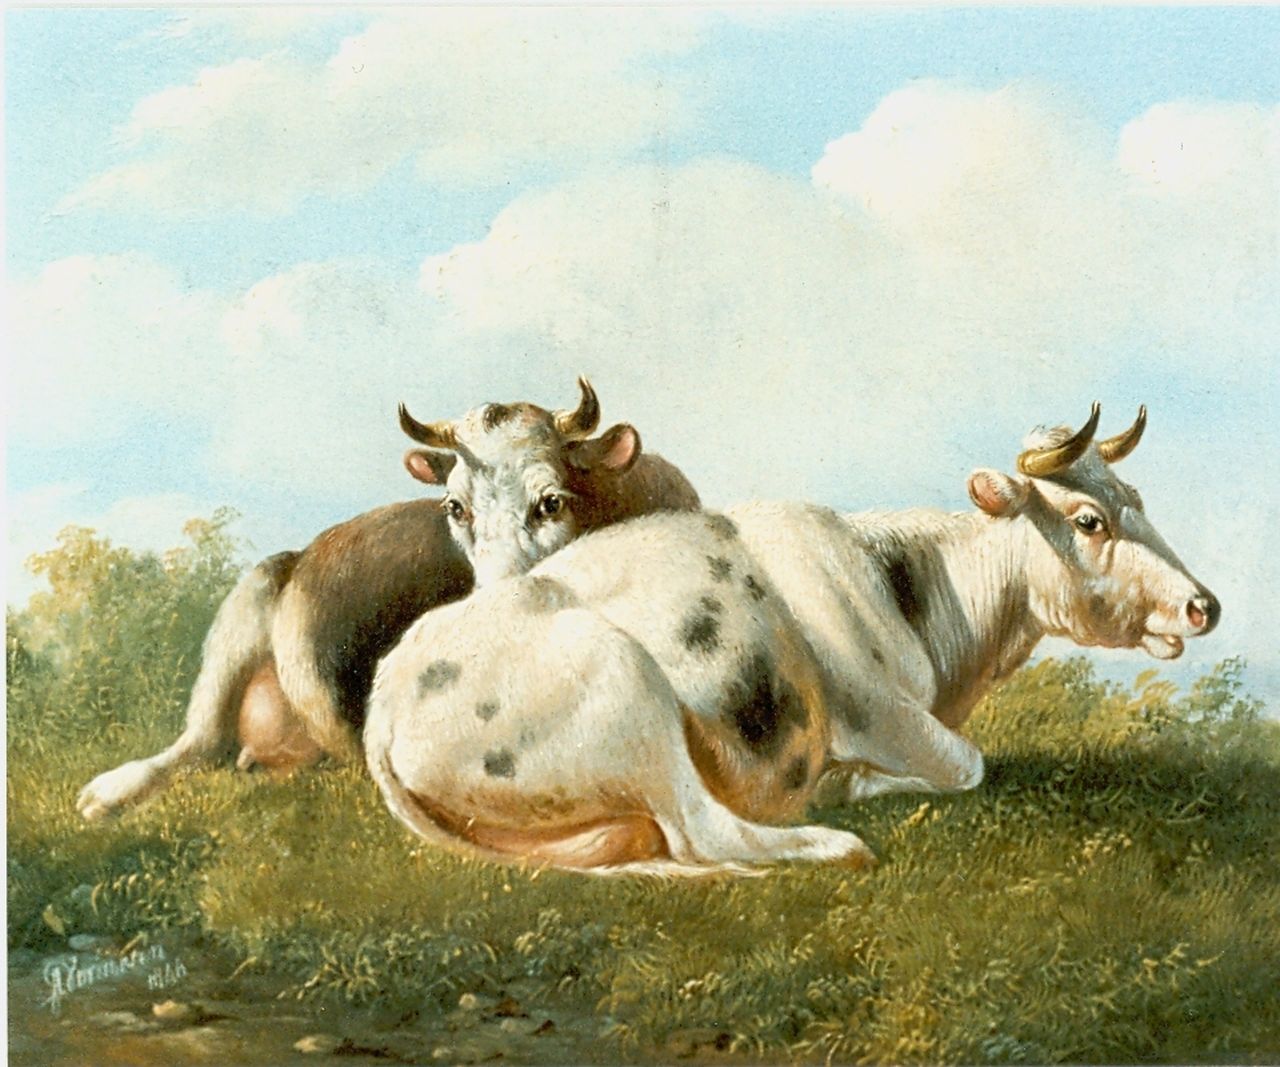 Verhoesen A.  | Albertus Verhoesen, Liggende koeien in de weide, olieverf op paneel 14,5 x 16,5 cm, gesigneerd linksonder en gedateerd 1846